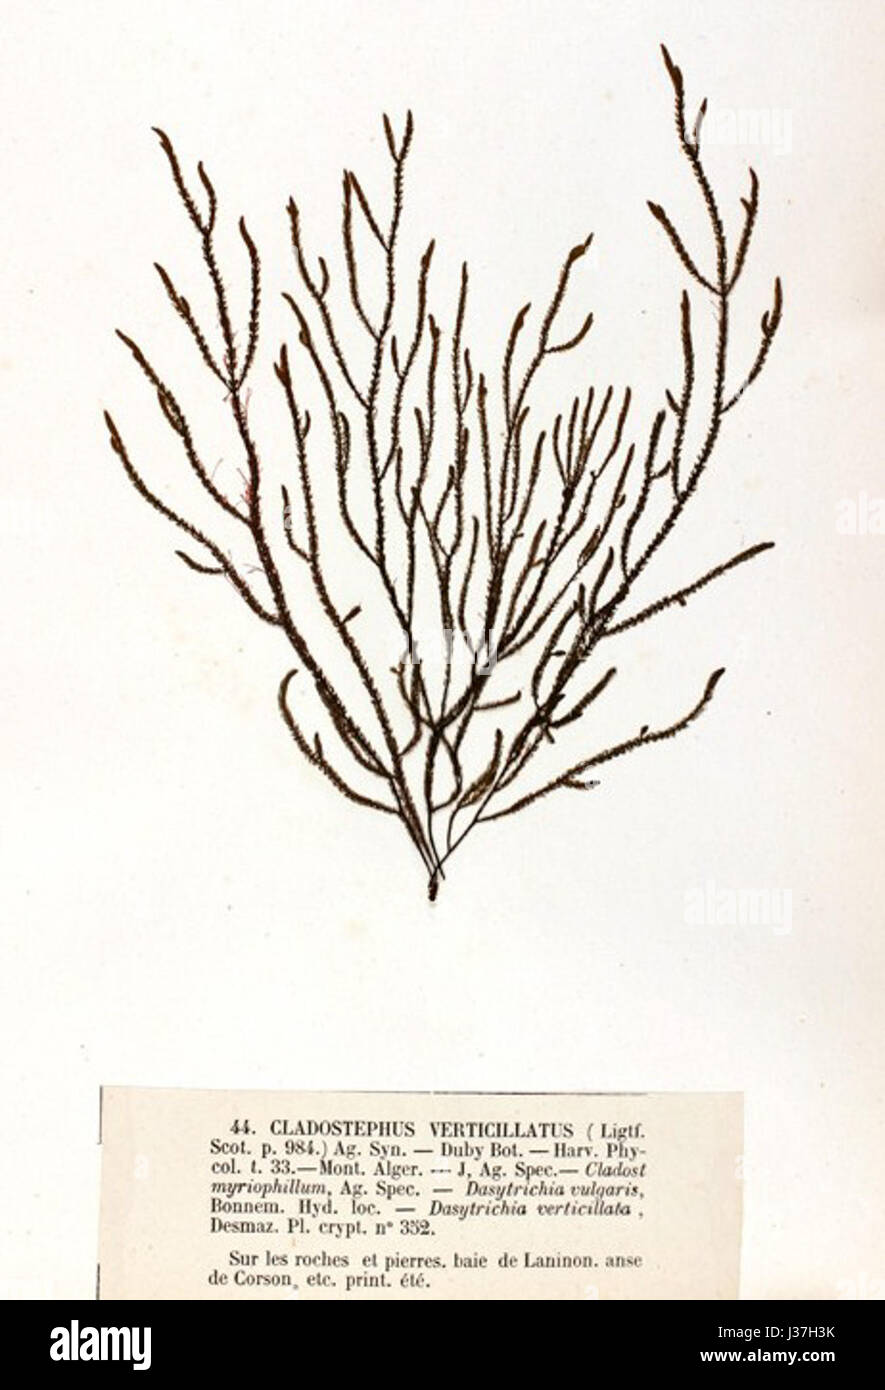 Cladostephus verticillatus Crouan (2) Stock Photo